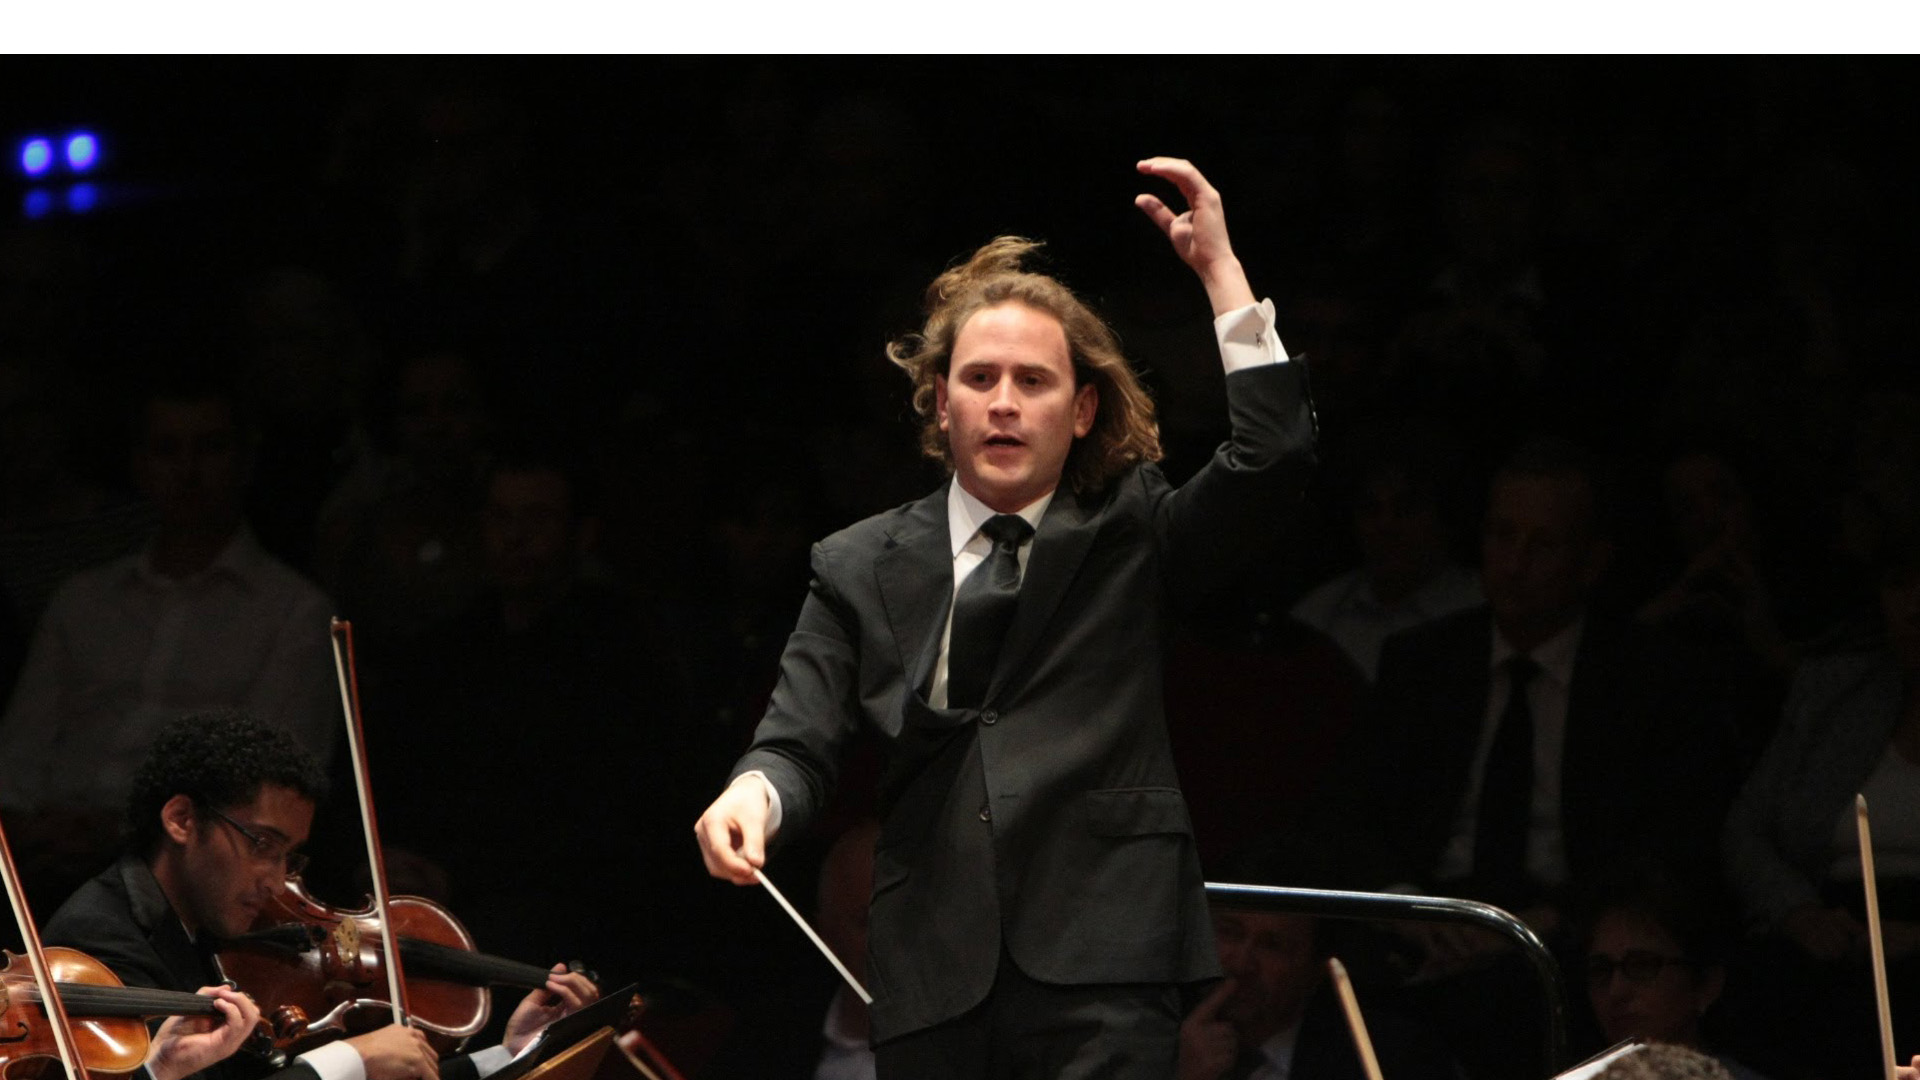 Christian Vásquez fue nombrado director principal invitado de la Orquesta de Het Gelders hasta finales de 2018